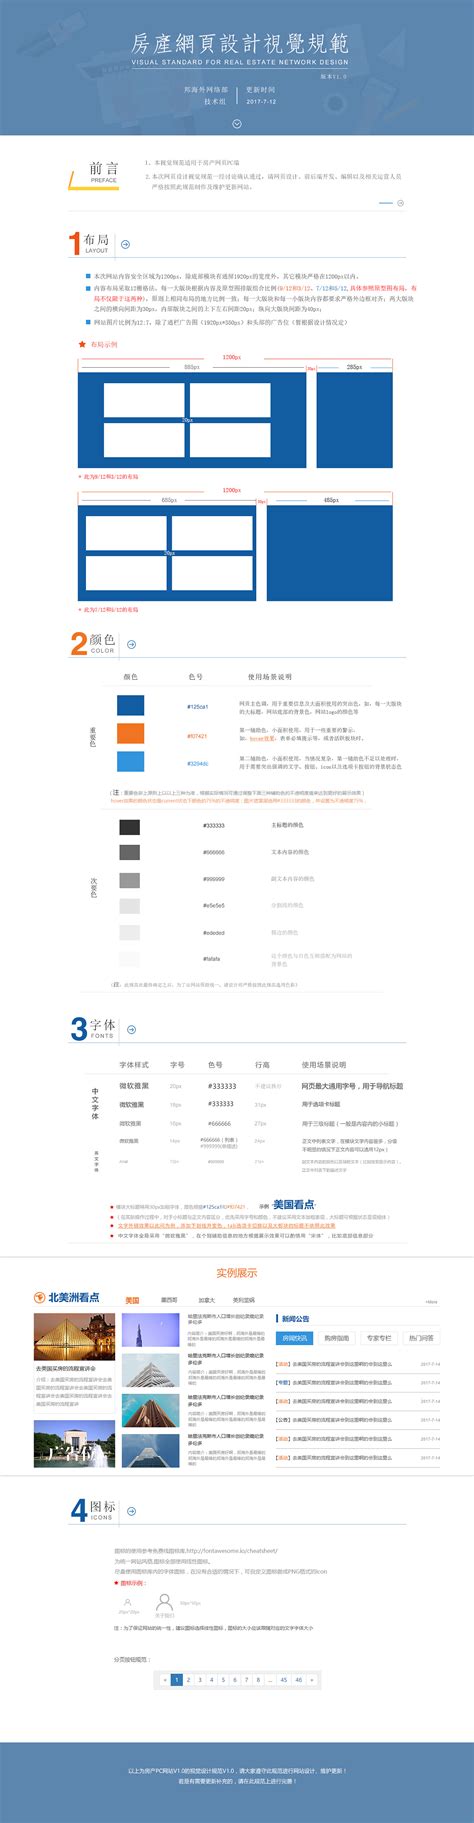 宜昌网站设计规范